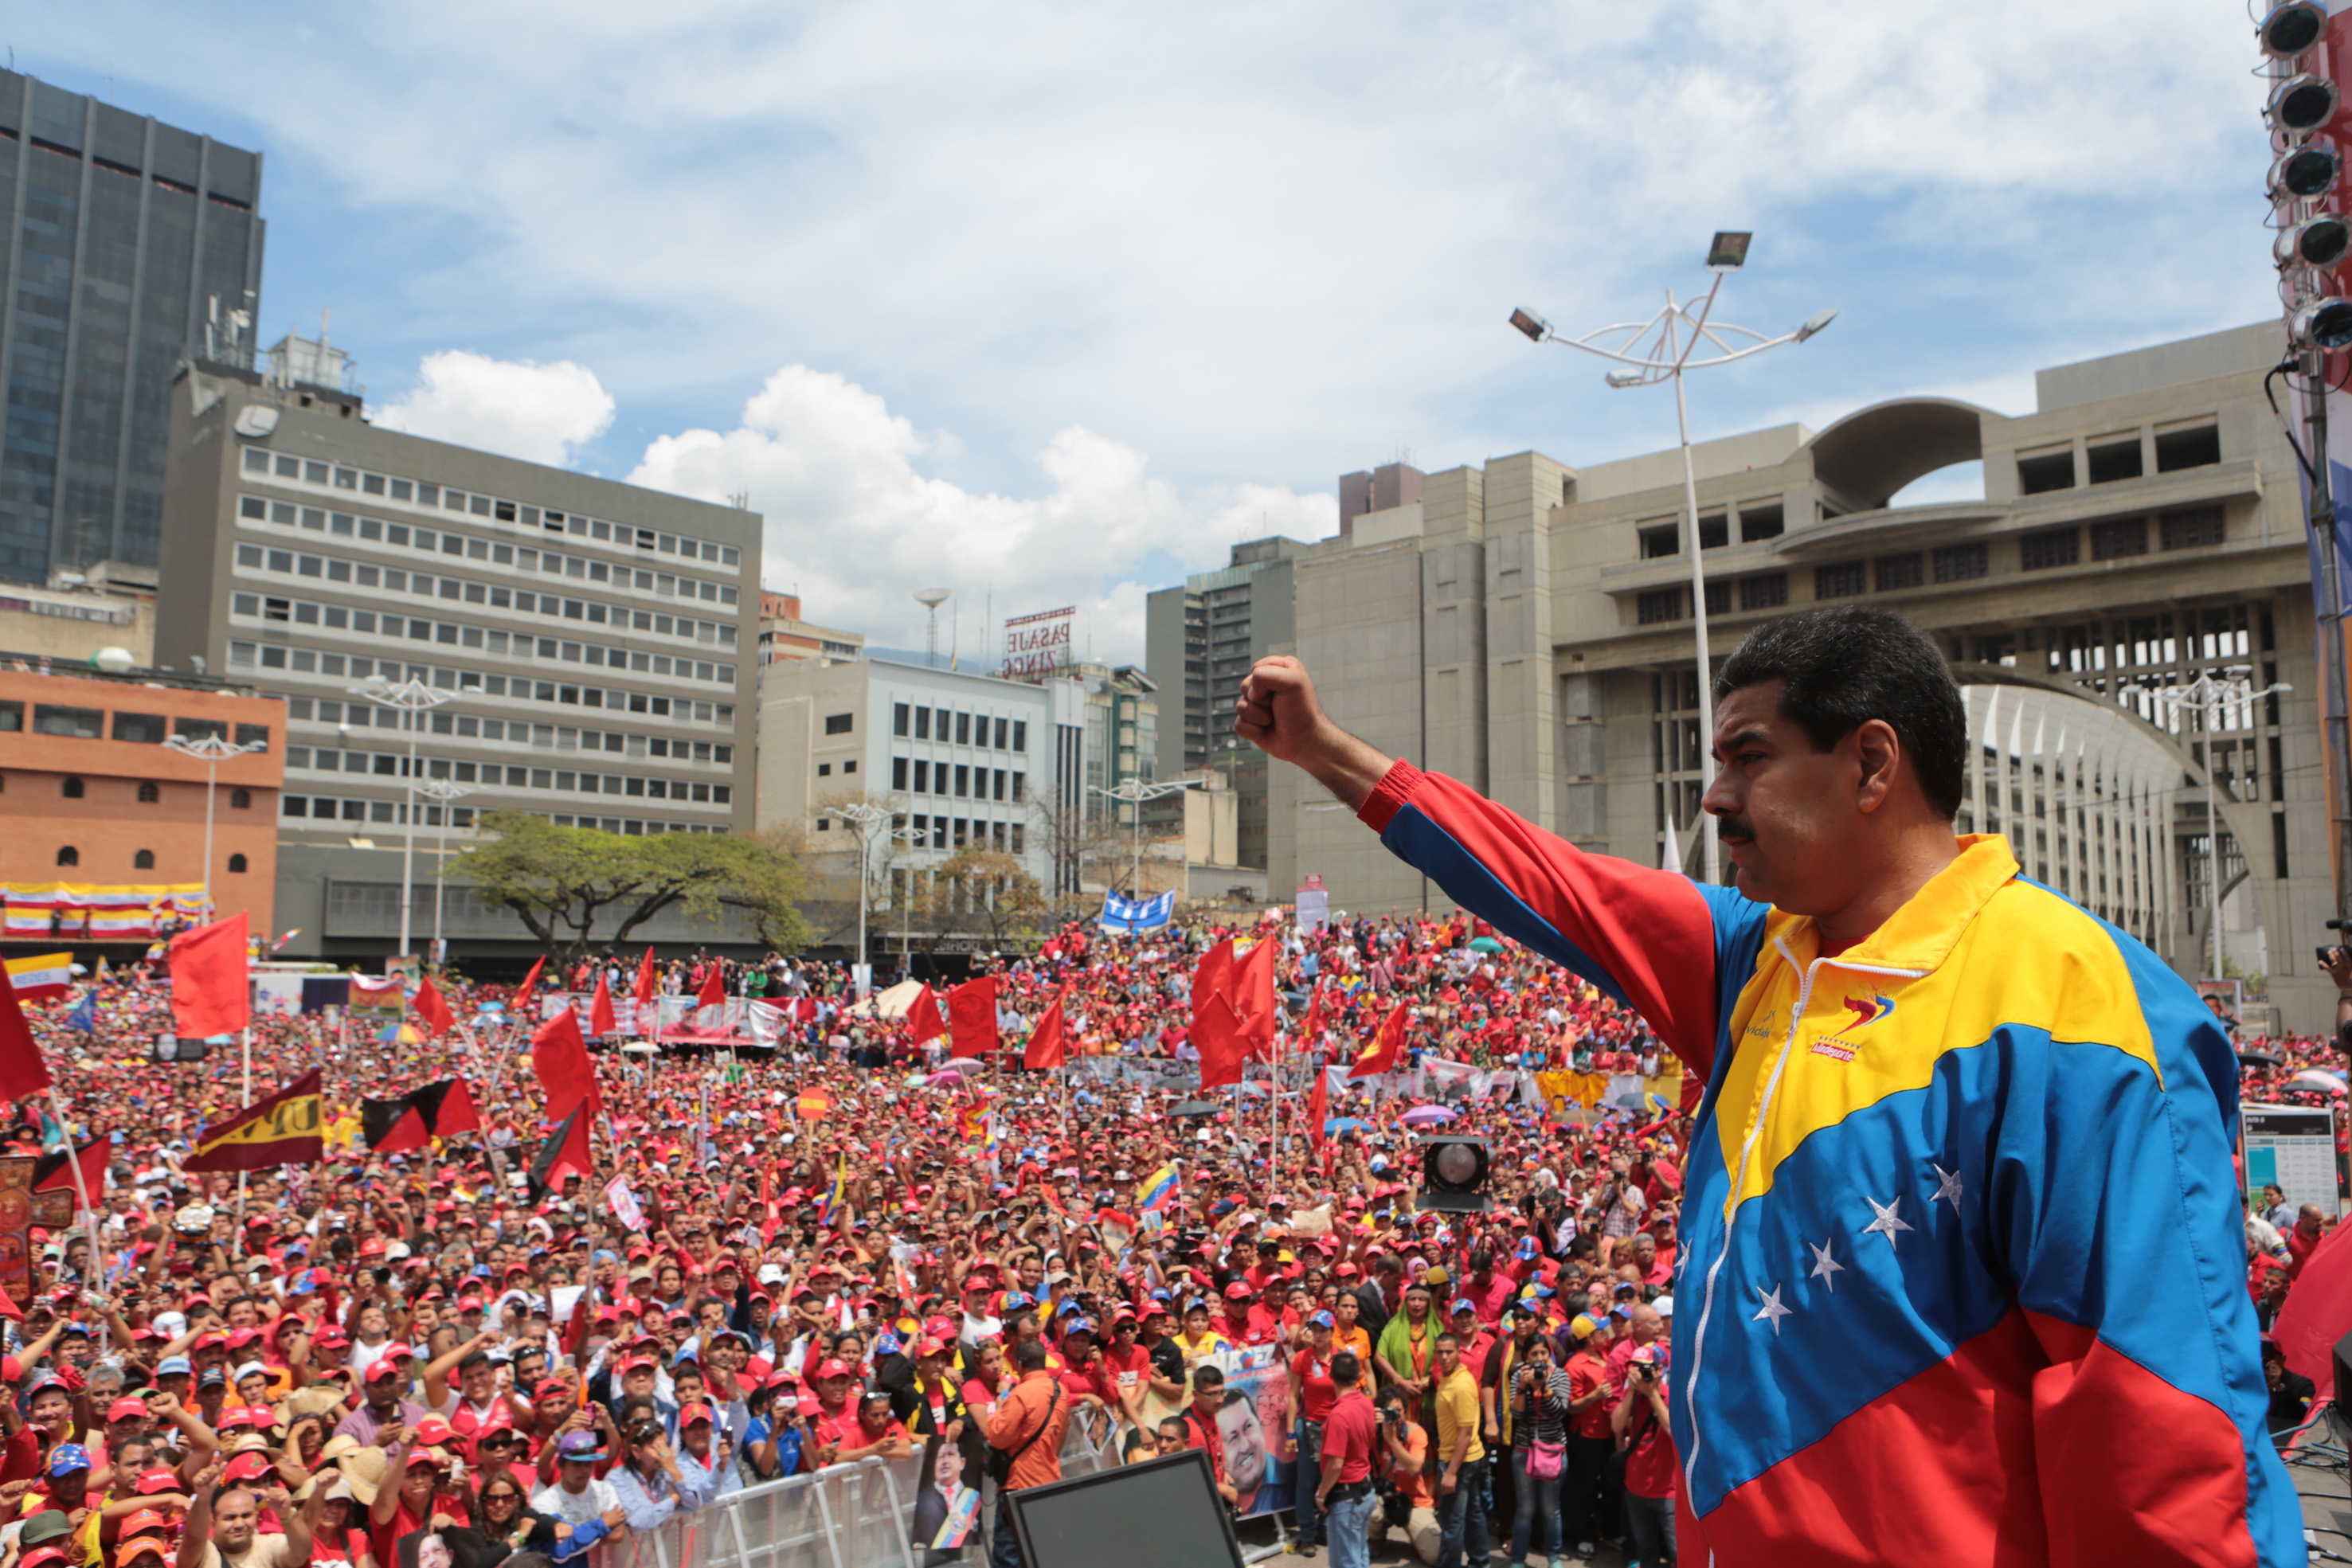 Résultat de recherche d'images pour "Soutien populaire au Président Maduro Venezuela Images"